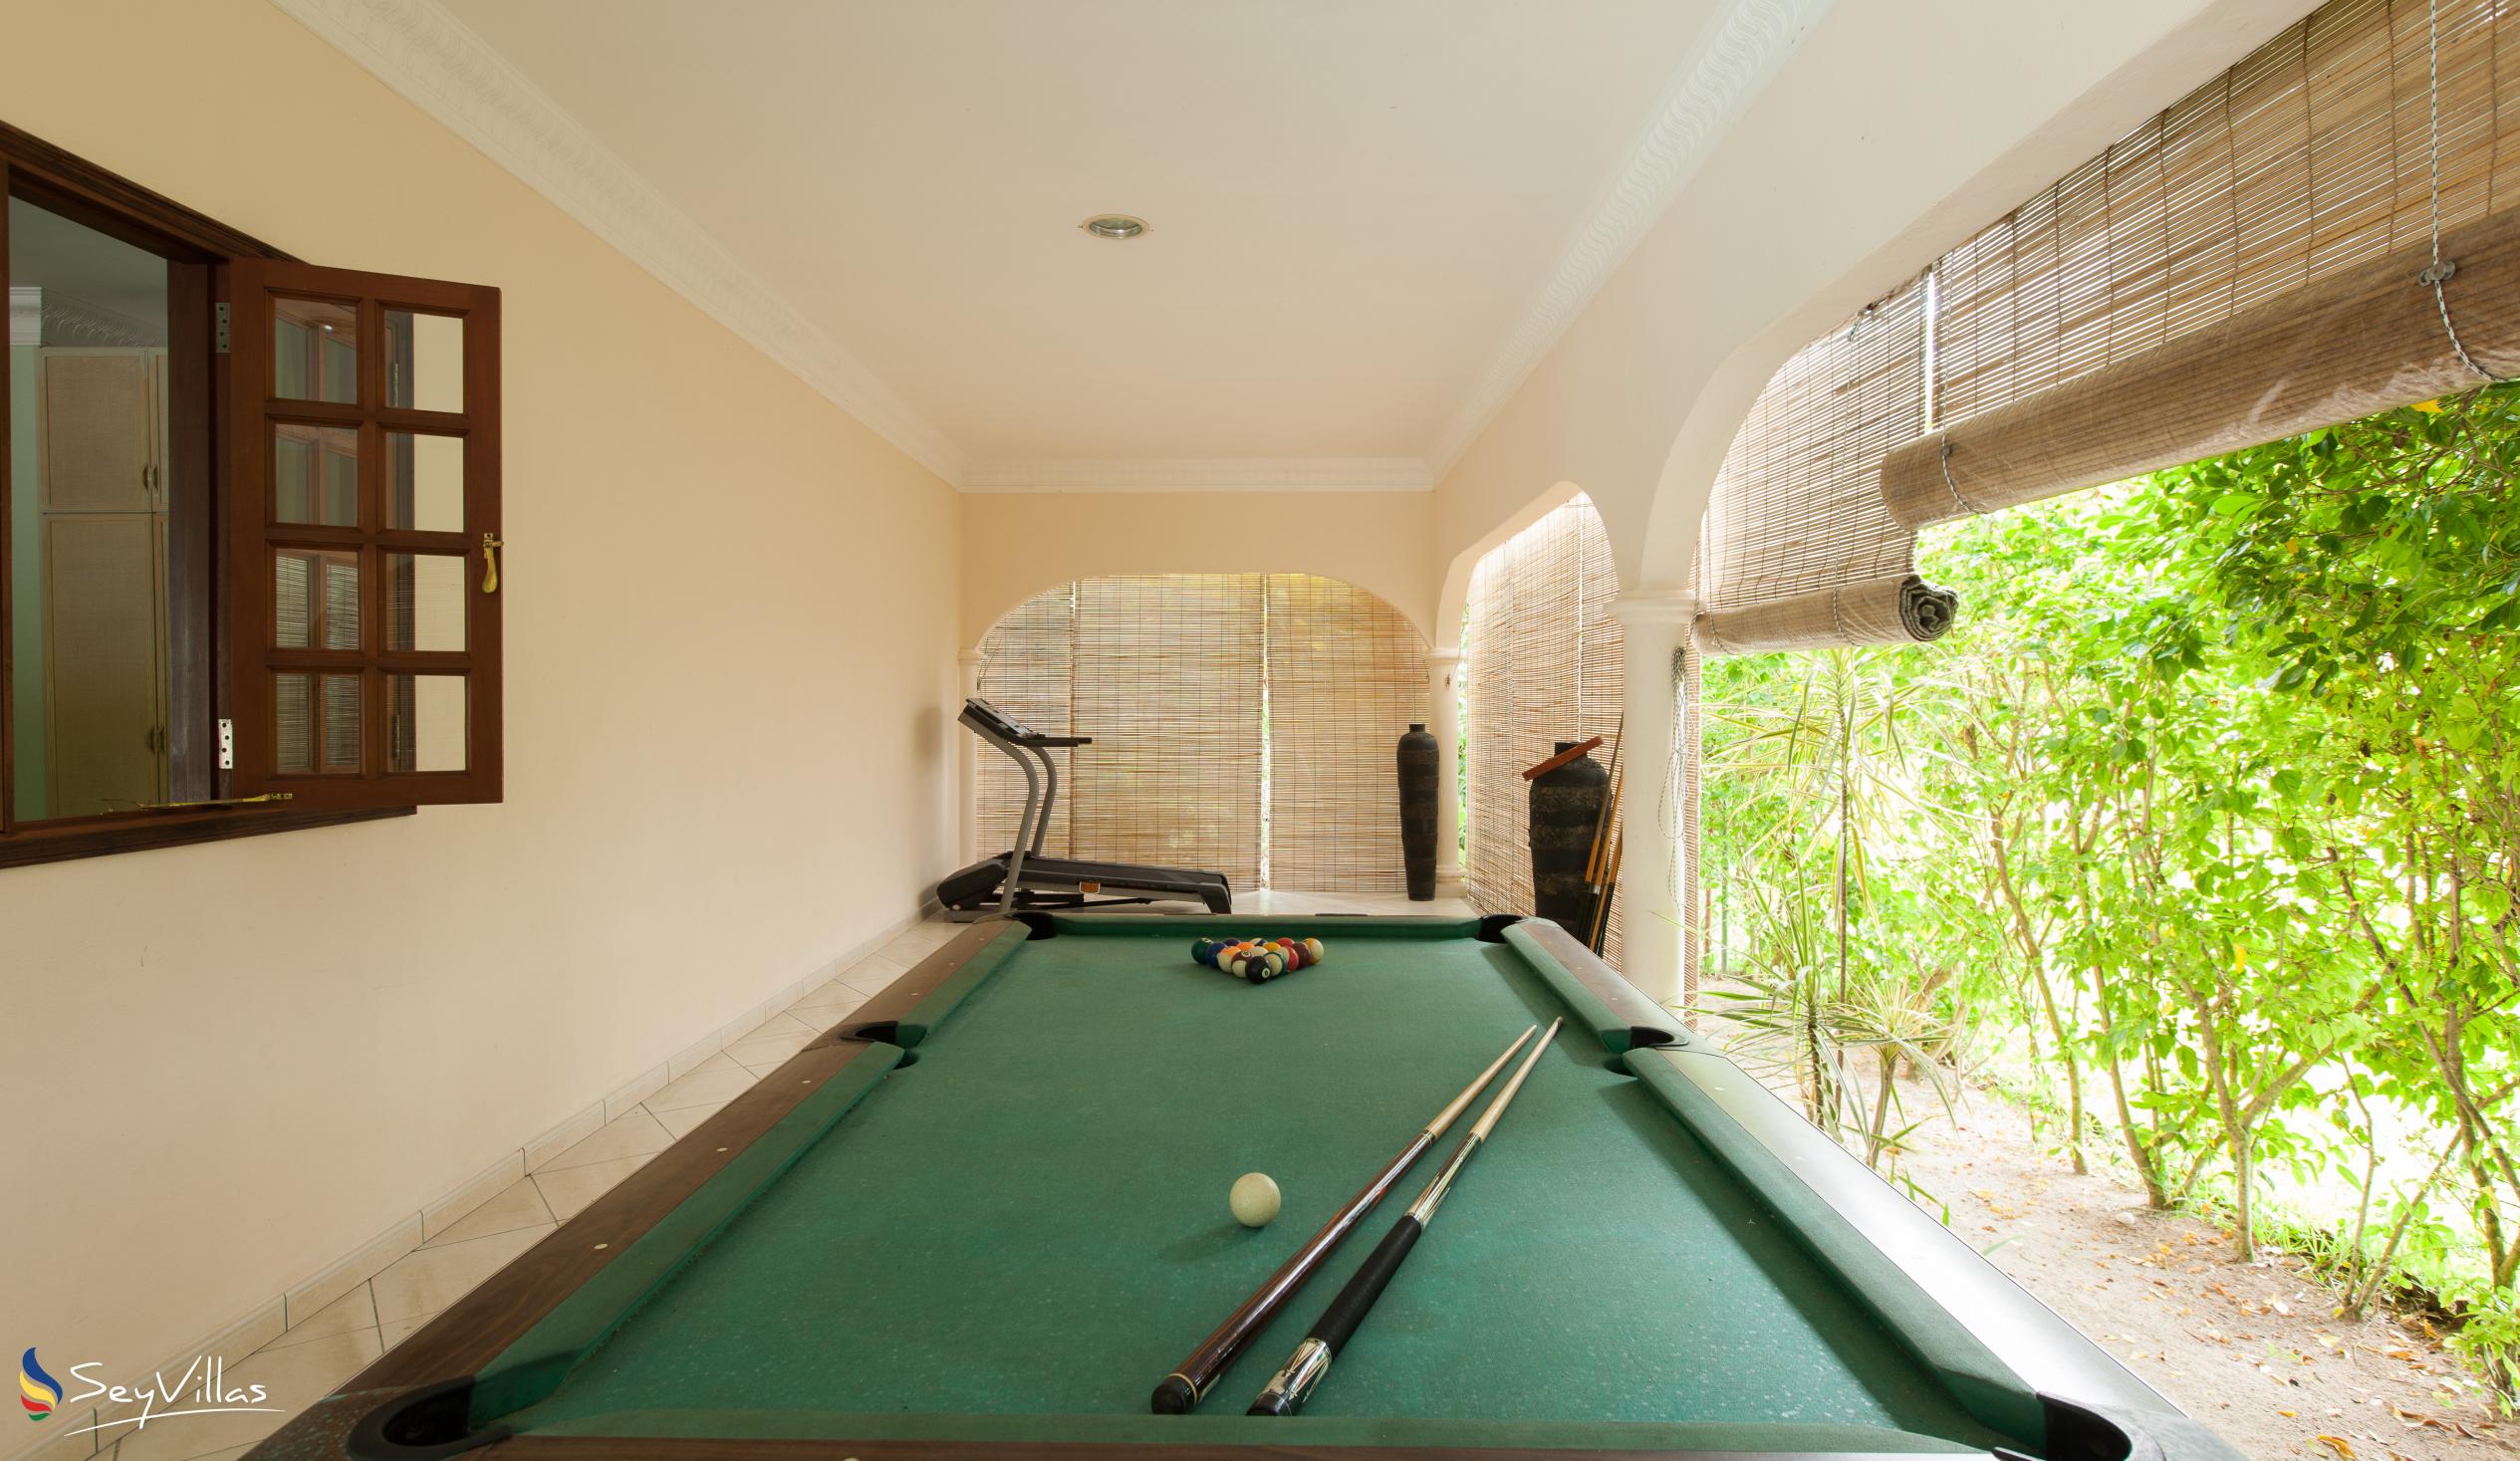 Photo 44: Villa de Cerf - Indoor area - Cerf Island (Seychelles)